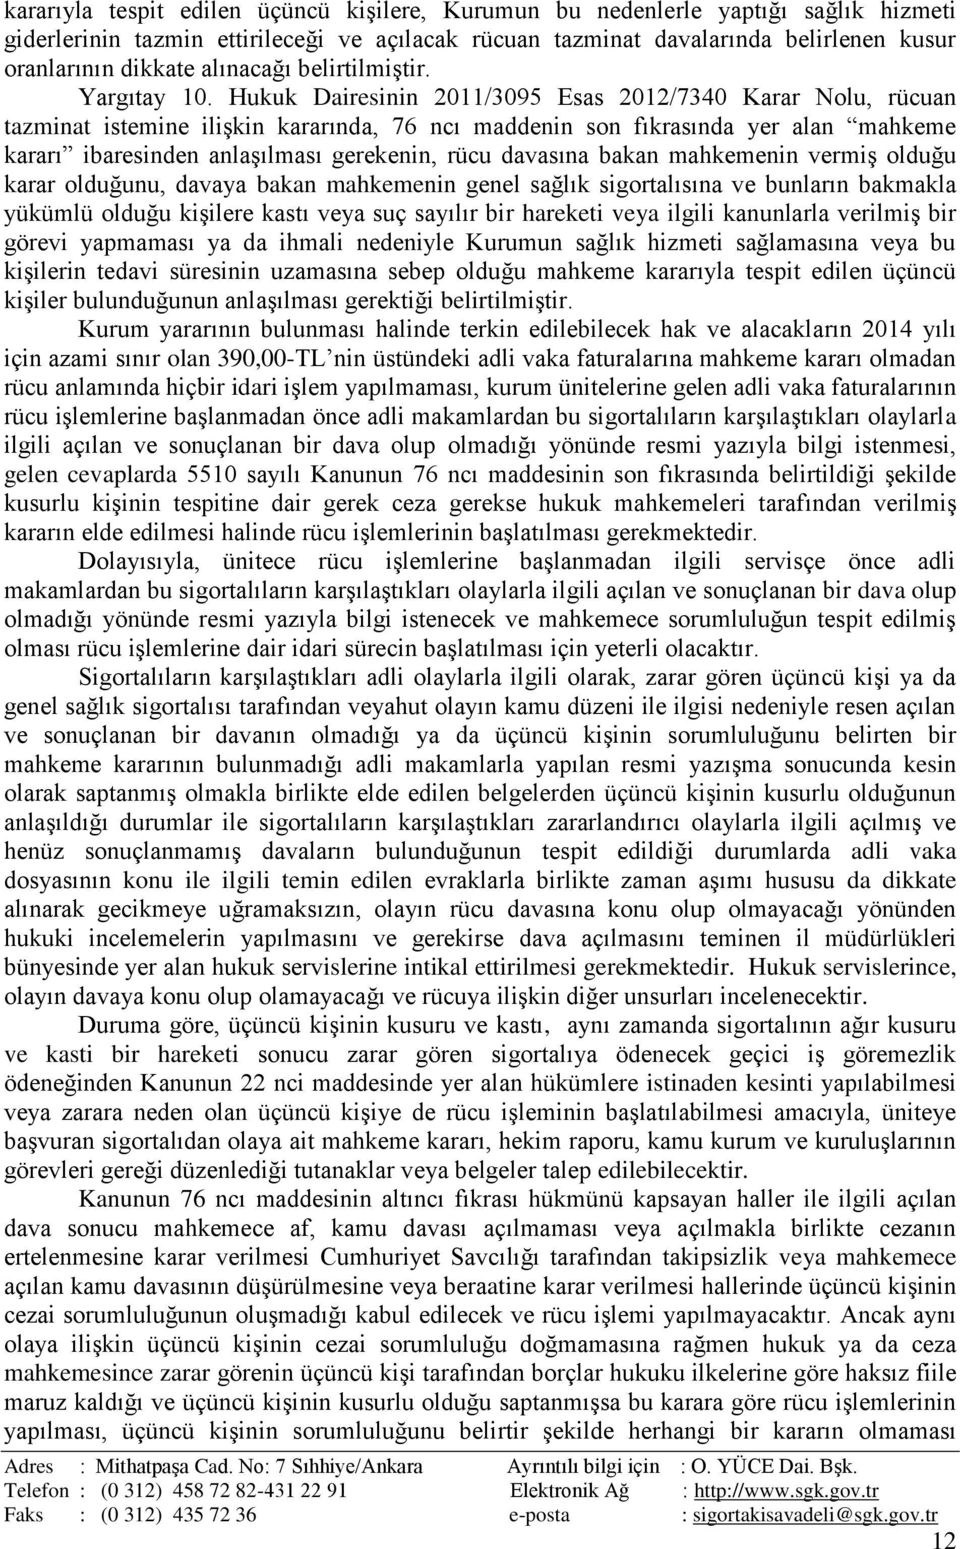 Hukuk Dairesinin 2011/3095 Esas 2012/7340 Karar Nolu, rücuan tazminat istemine ilişkin kararında, 76 ncı maddenin son fıkrasında yer alan mahkeme kararı ibaresinden anlaşılması gerekenin, rücu